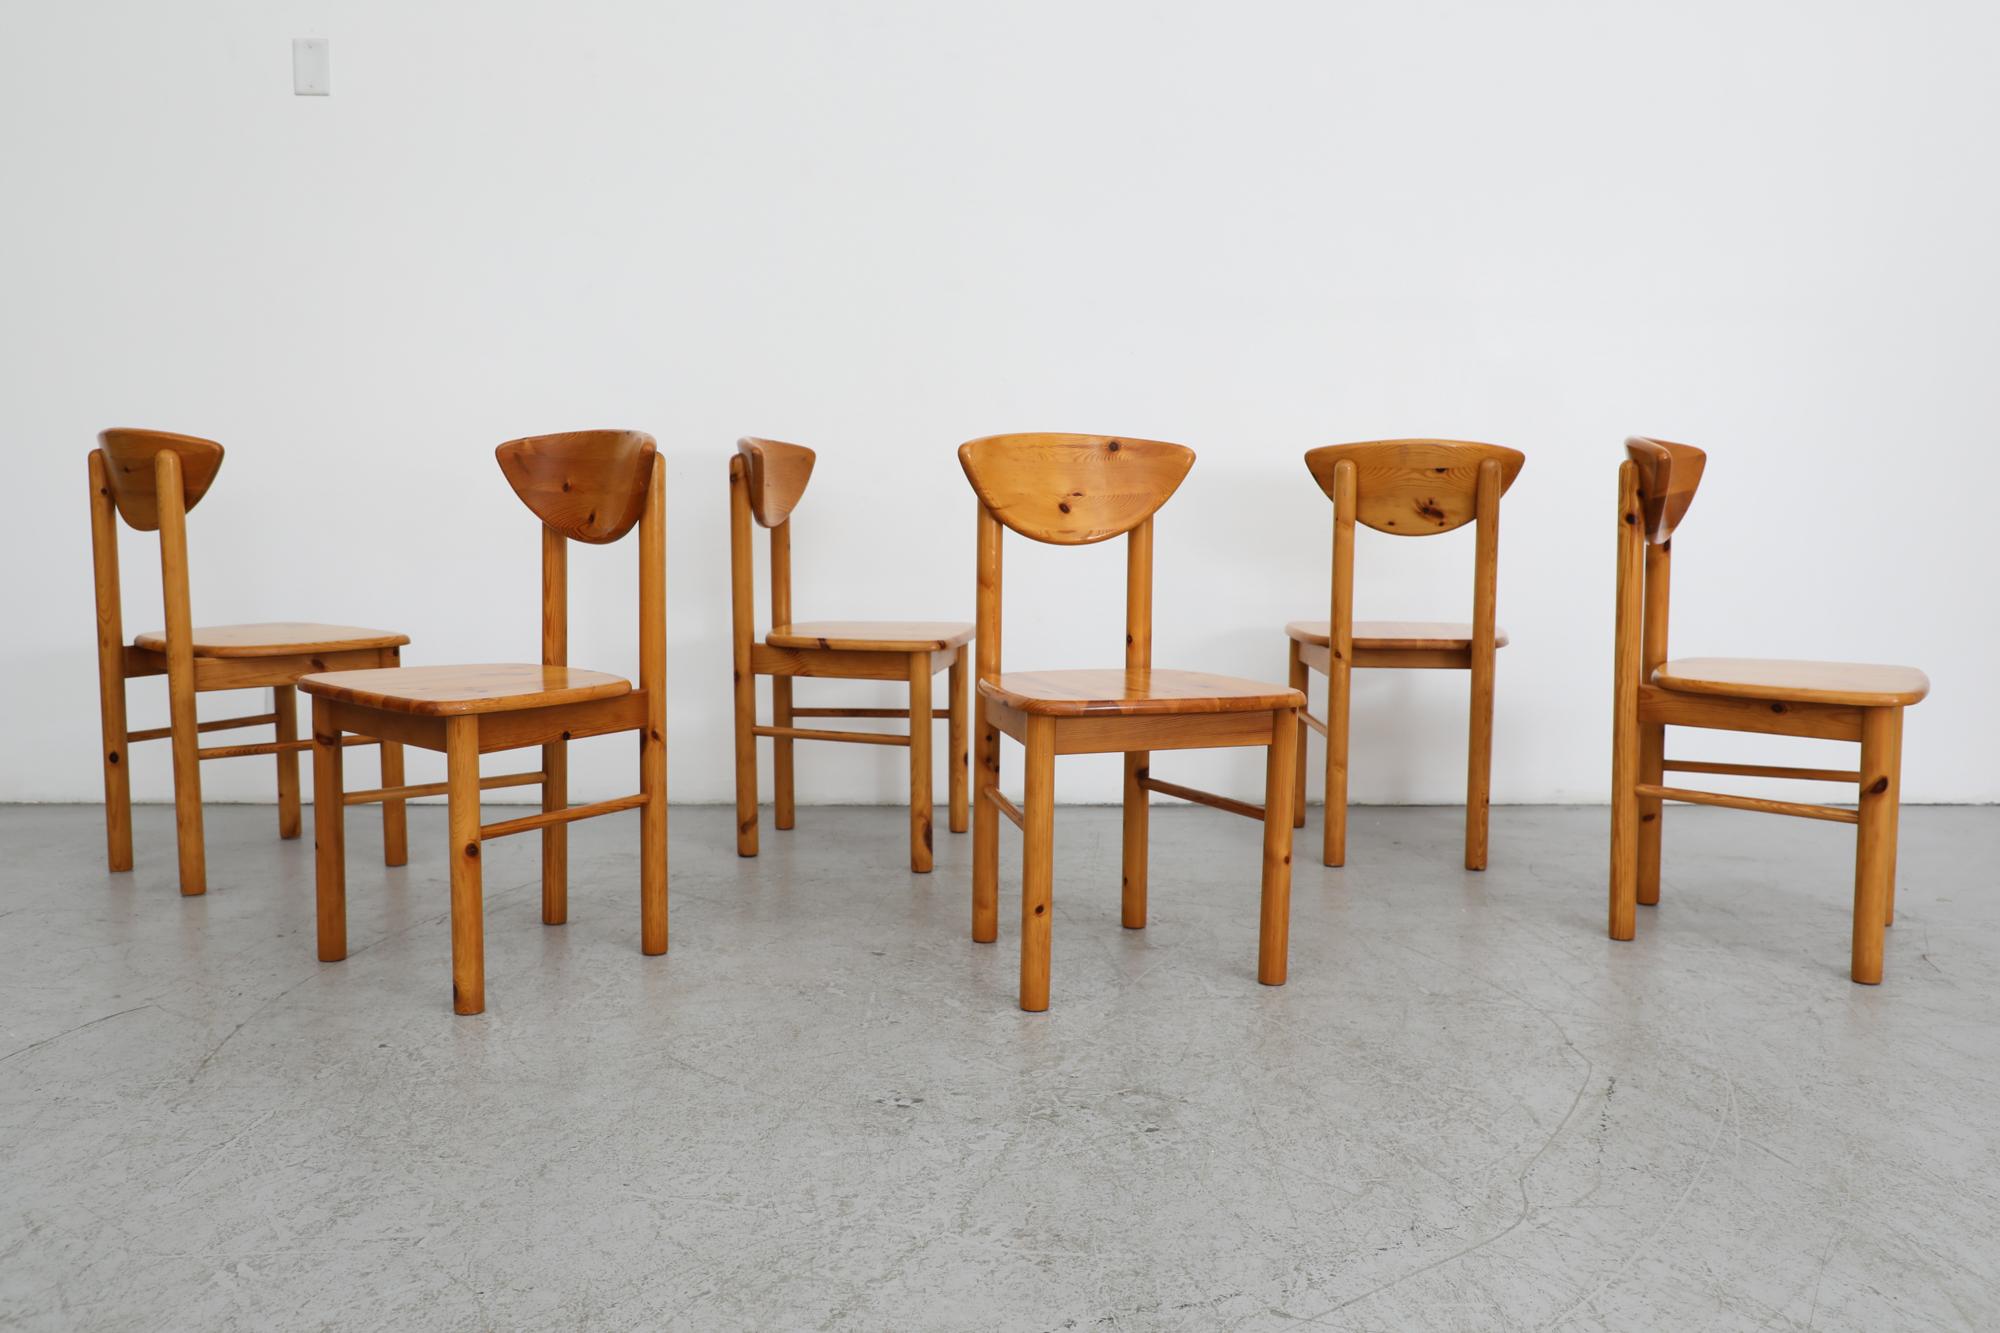 6 Stühle im Stil der Jahrhundertmitte von Rainer Daumiller aus Kiefernholz mit angenehm geschwungenen Rückenlehnen. Das Set ist leicht nachgearbeitet in  hochwertiges Kiefernholz mit einer schönen Maserung. Einige sichtbare Abnutzungserscheinungen